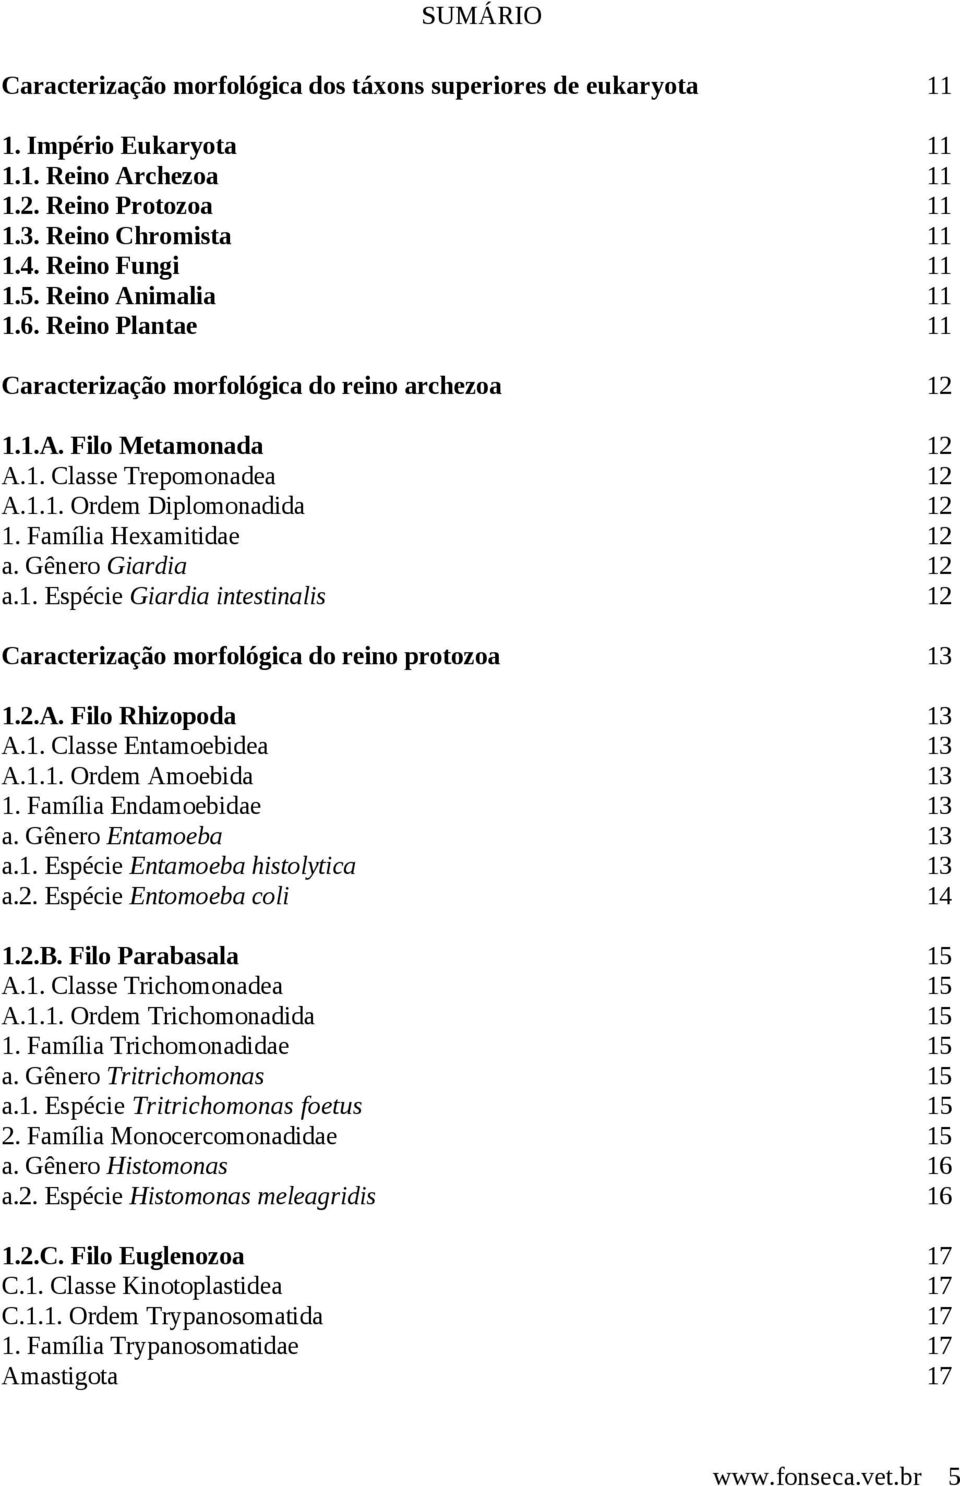 Gênero Giardia 12 a.1. Espécie Giardia intestinalis 12 Caracterização morfológica do reino protozoa 13 1.2.A. Filo Rhizopoda 13 A.1. Classe Entamoebidea 13 A.1.1. Ordem Amoebida 13 1.